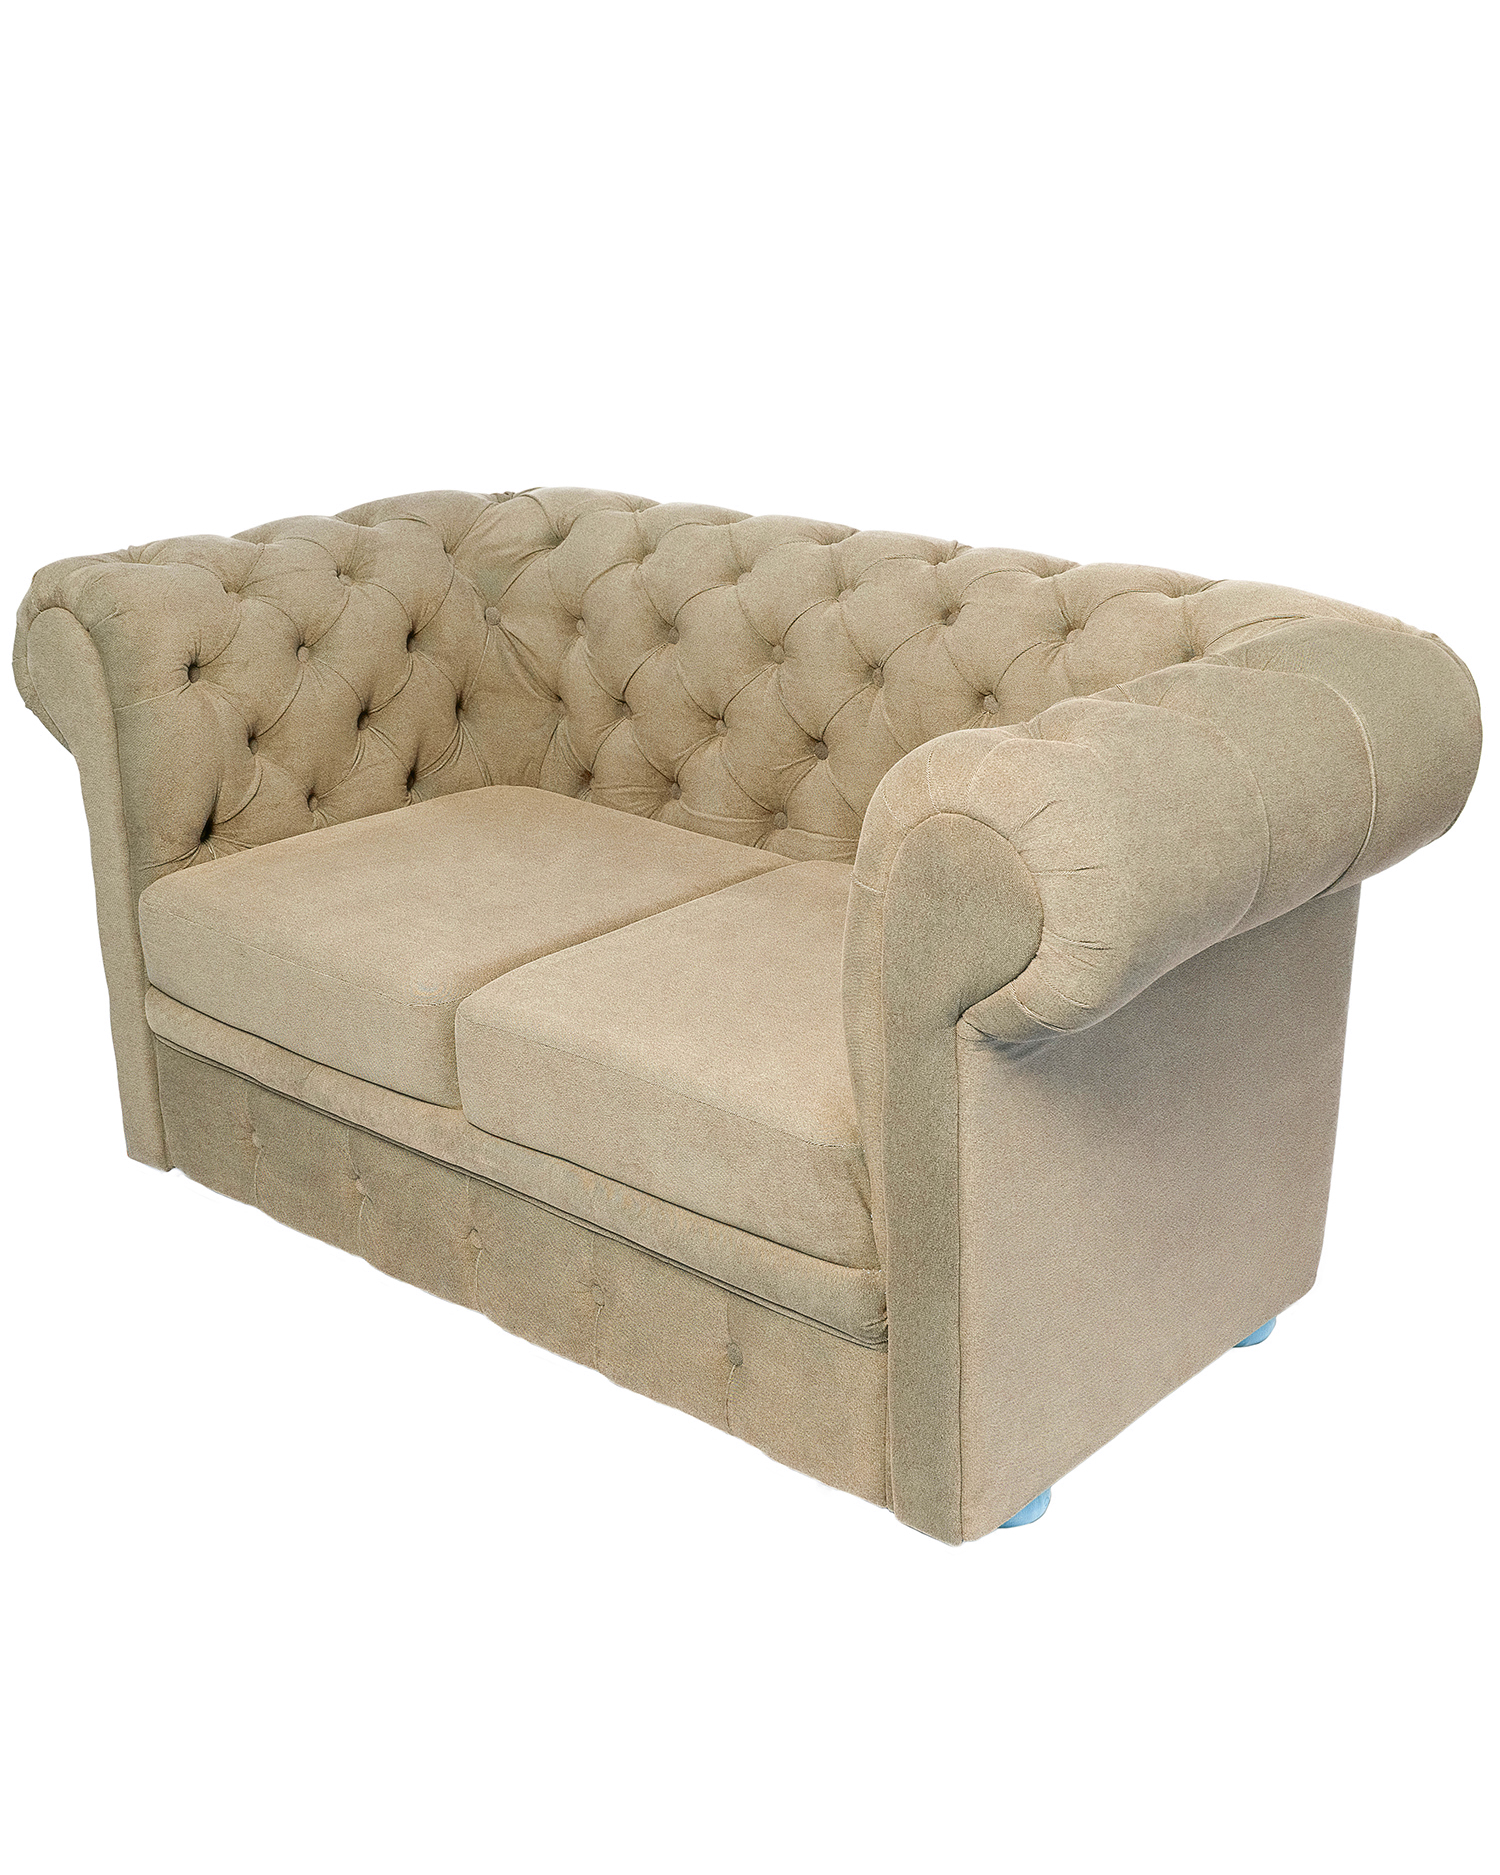 Demo-Artikel Möbel Vintage Sofa beige rabattiert versandkostenfrei